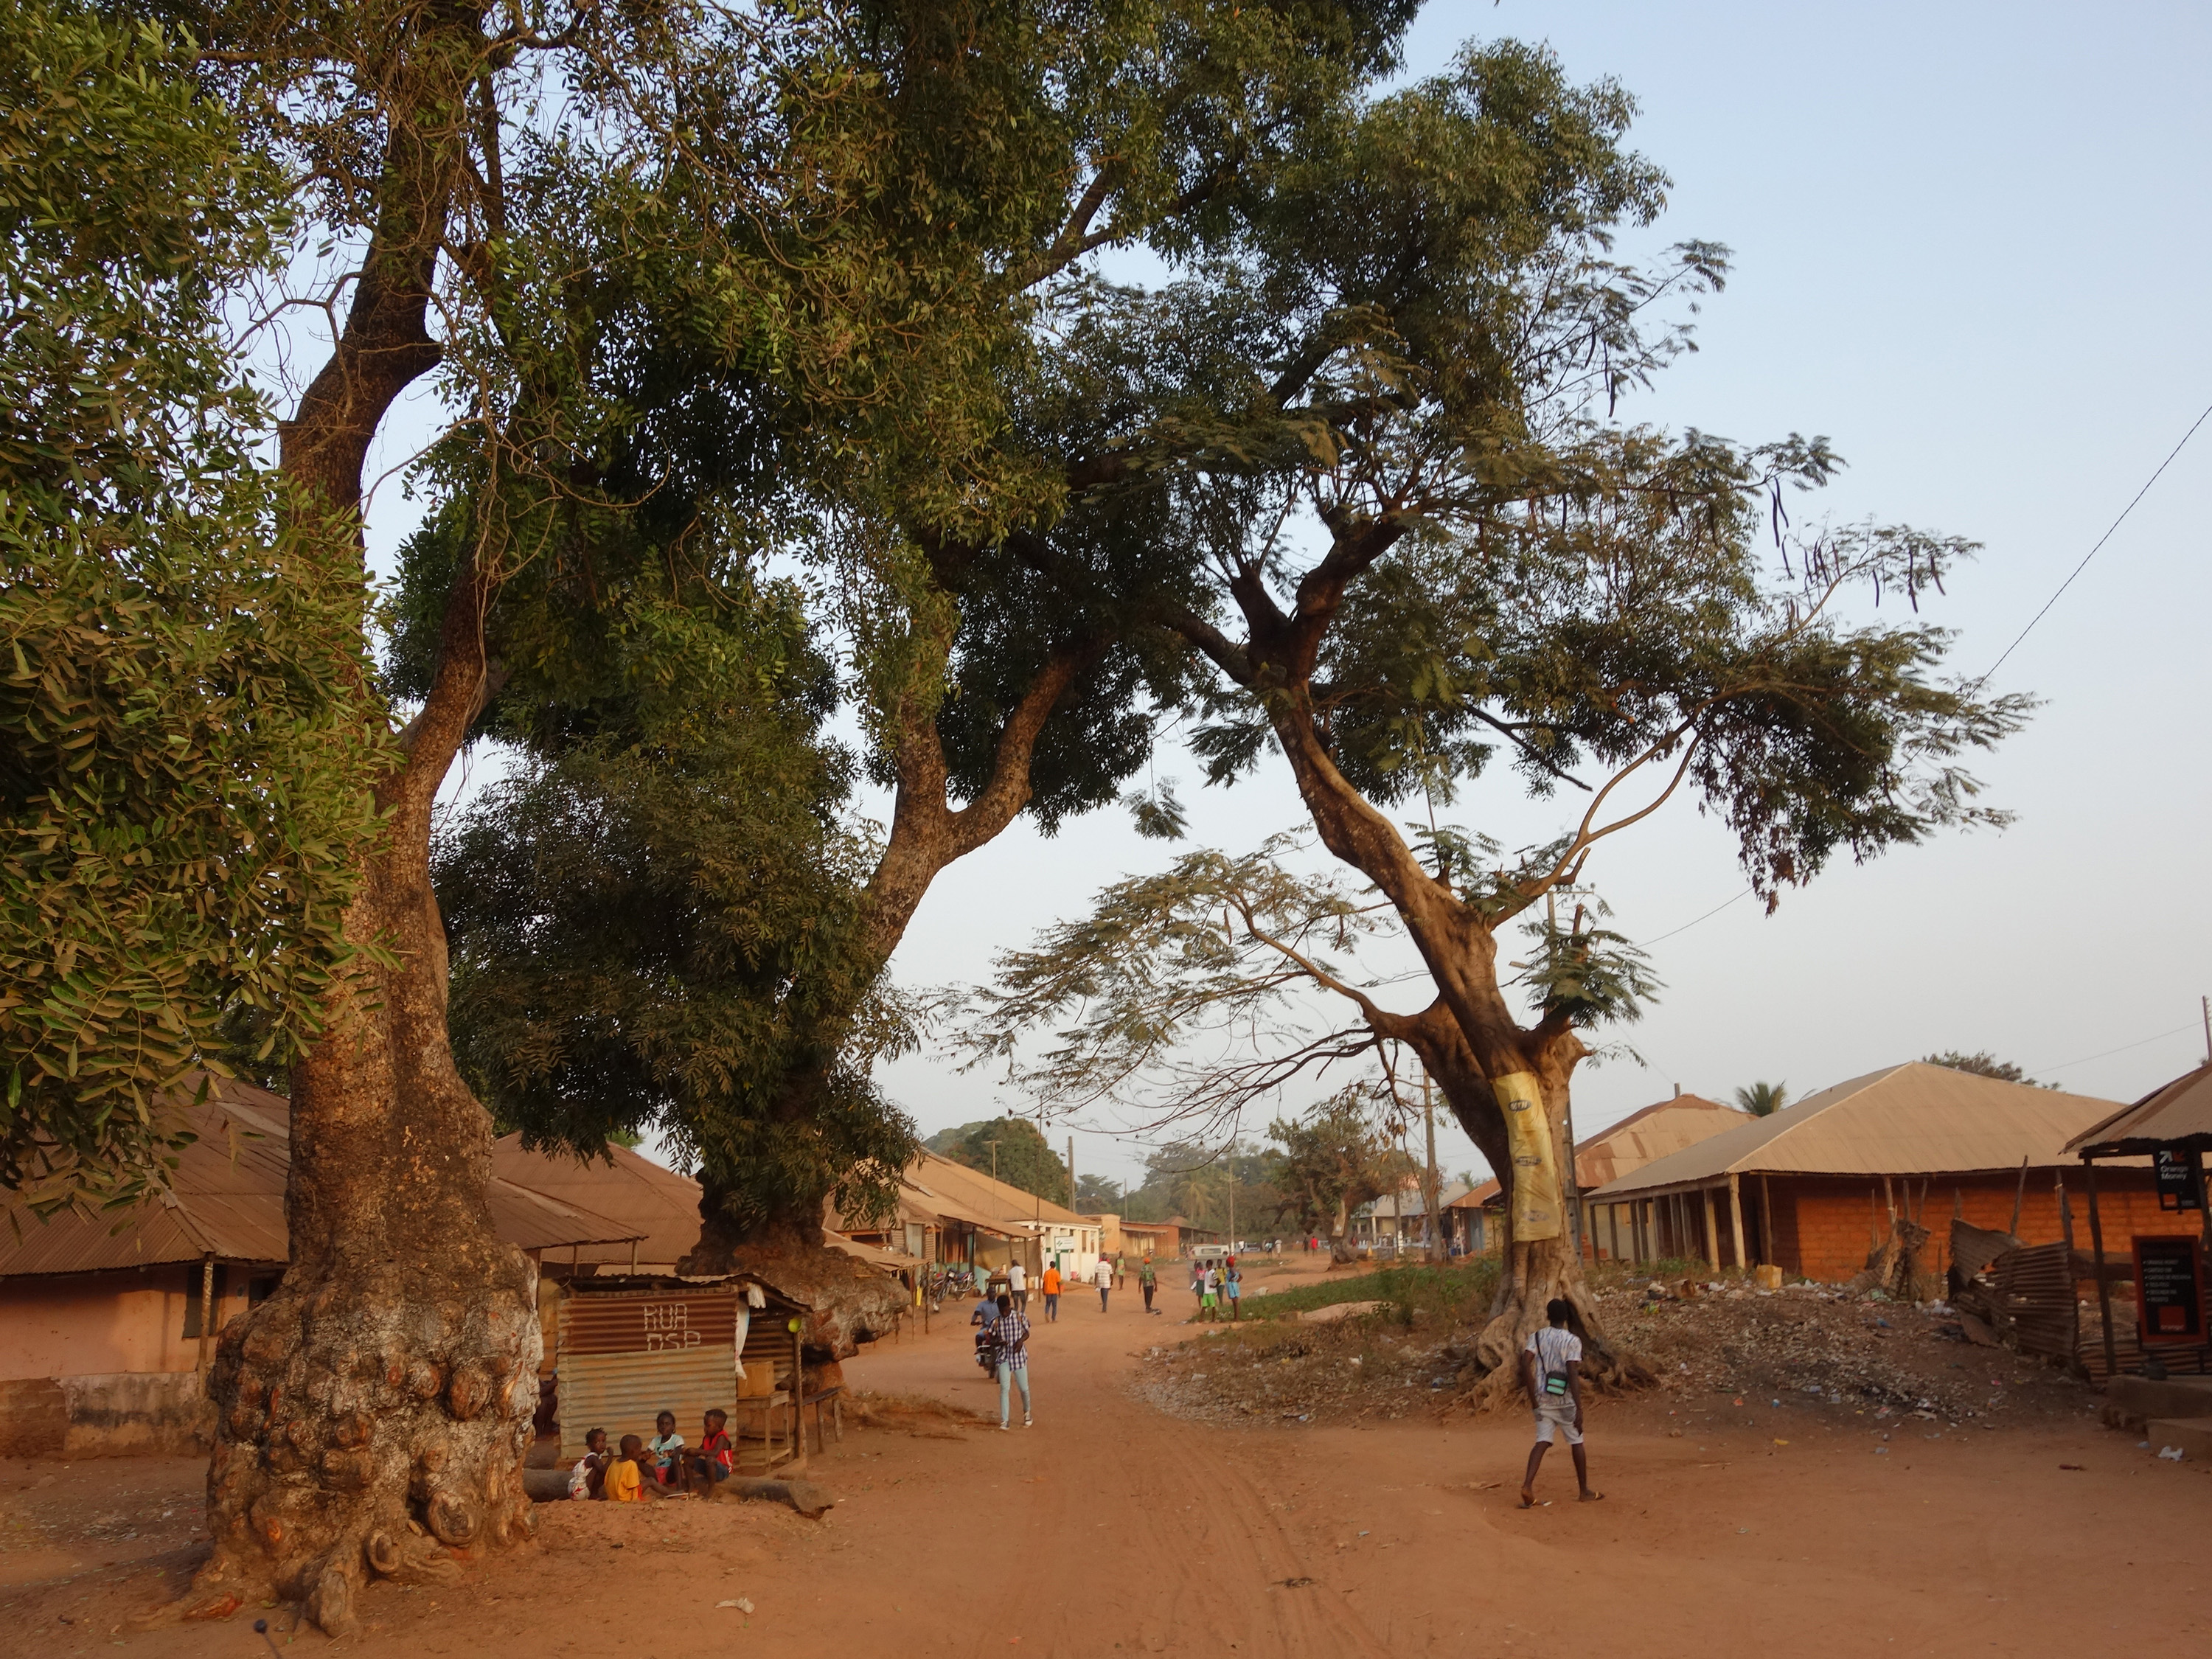 Bolama, Guinea Bissau, UN-Habitat 